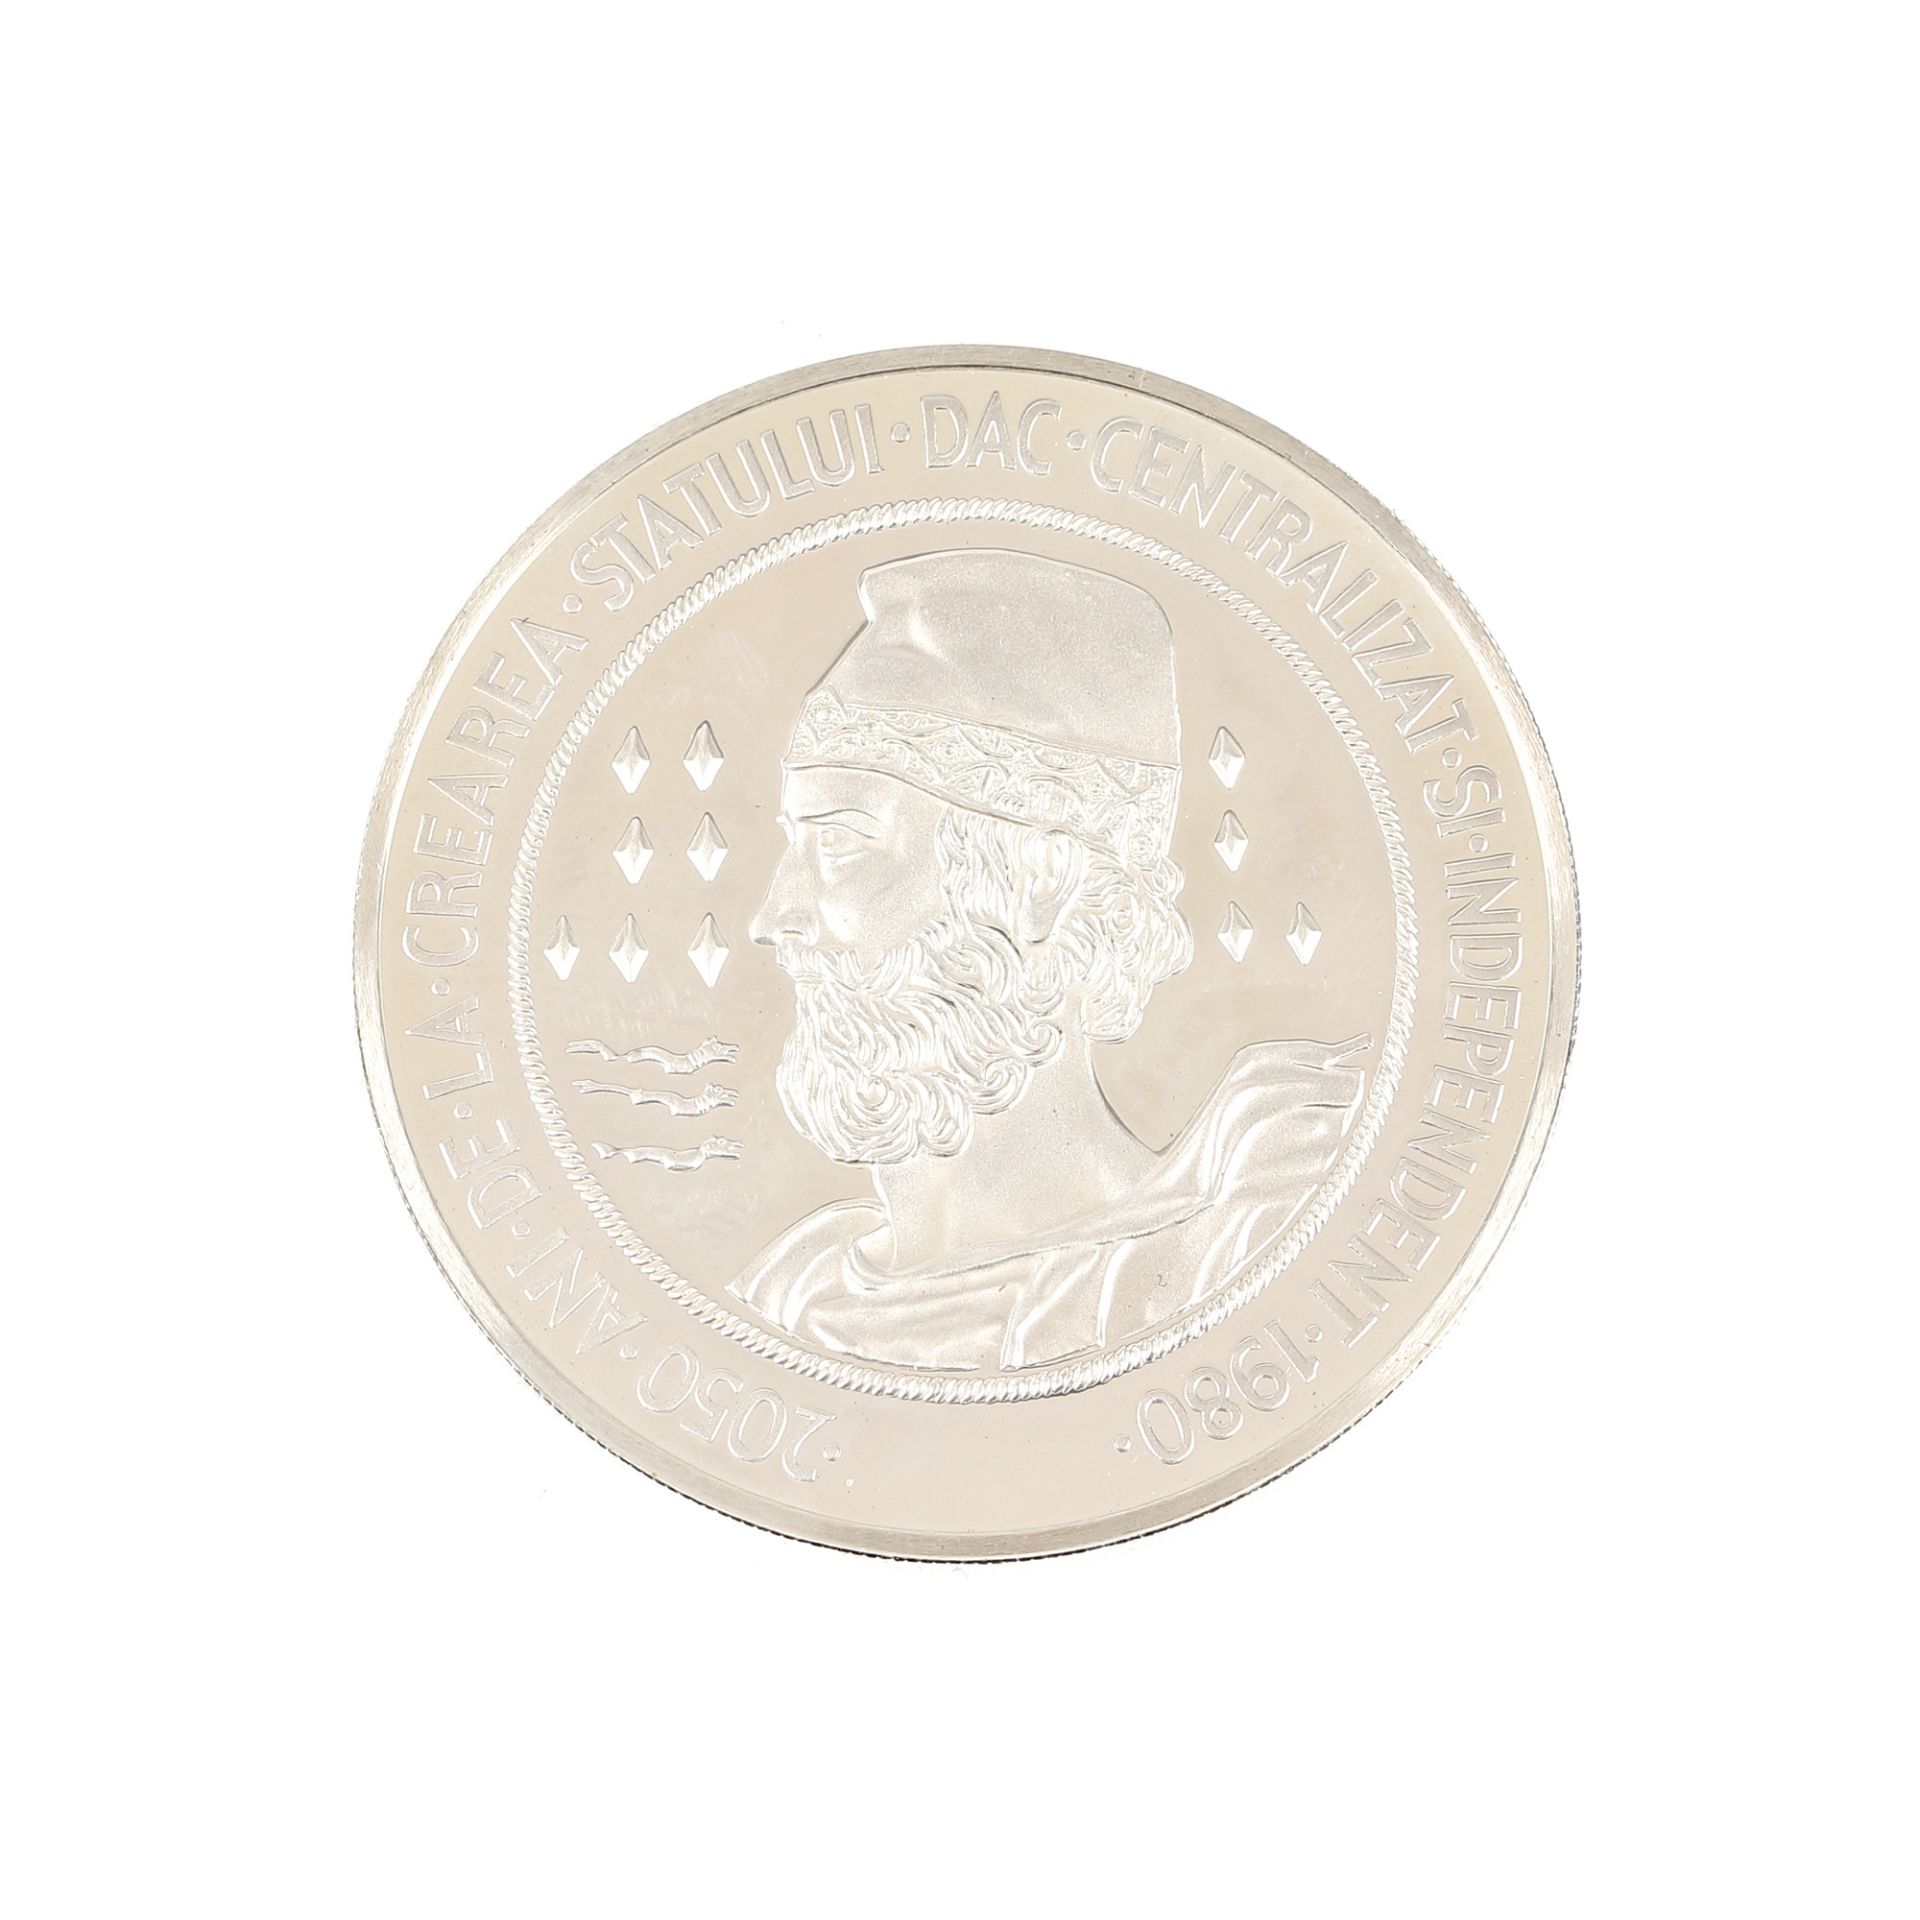 100 Lei 1982 coin, "2050 de ani de la crearea statului dac centralizat şi independent" ("2050 years